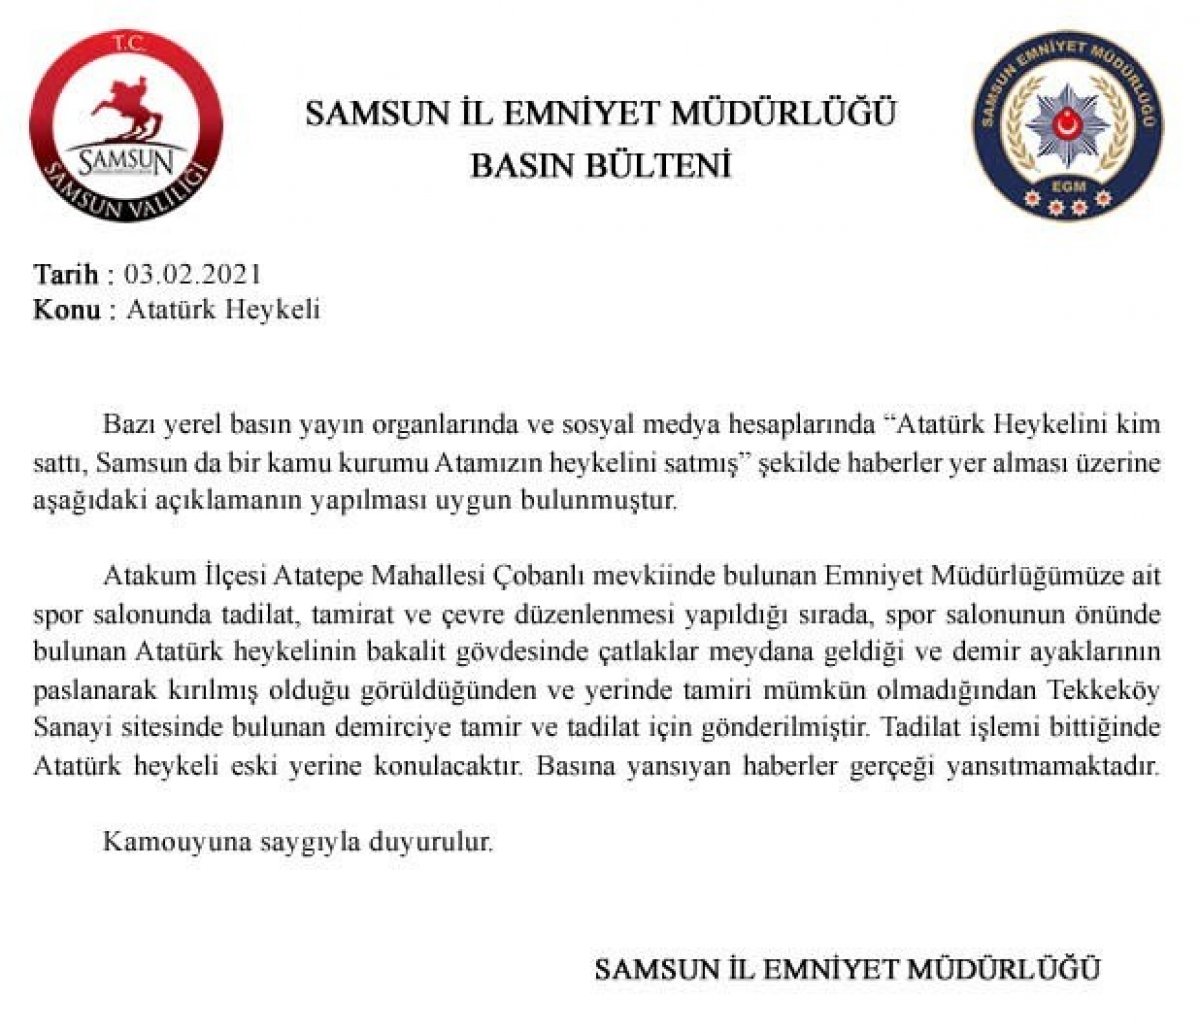 Samsun da  Atatürk heykeli satılıyor  iddialarına emniyet anında cevap verdi #2